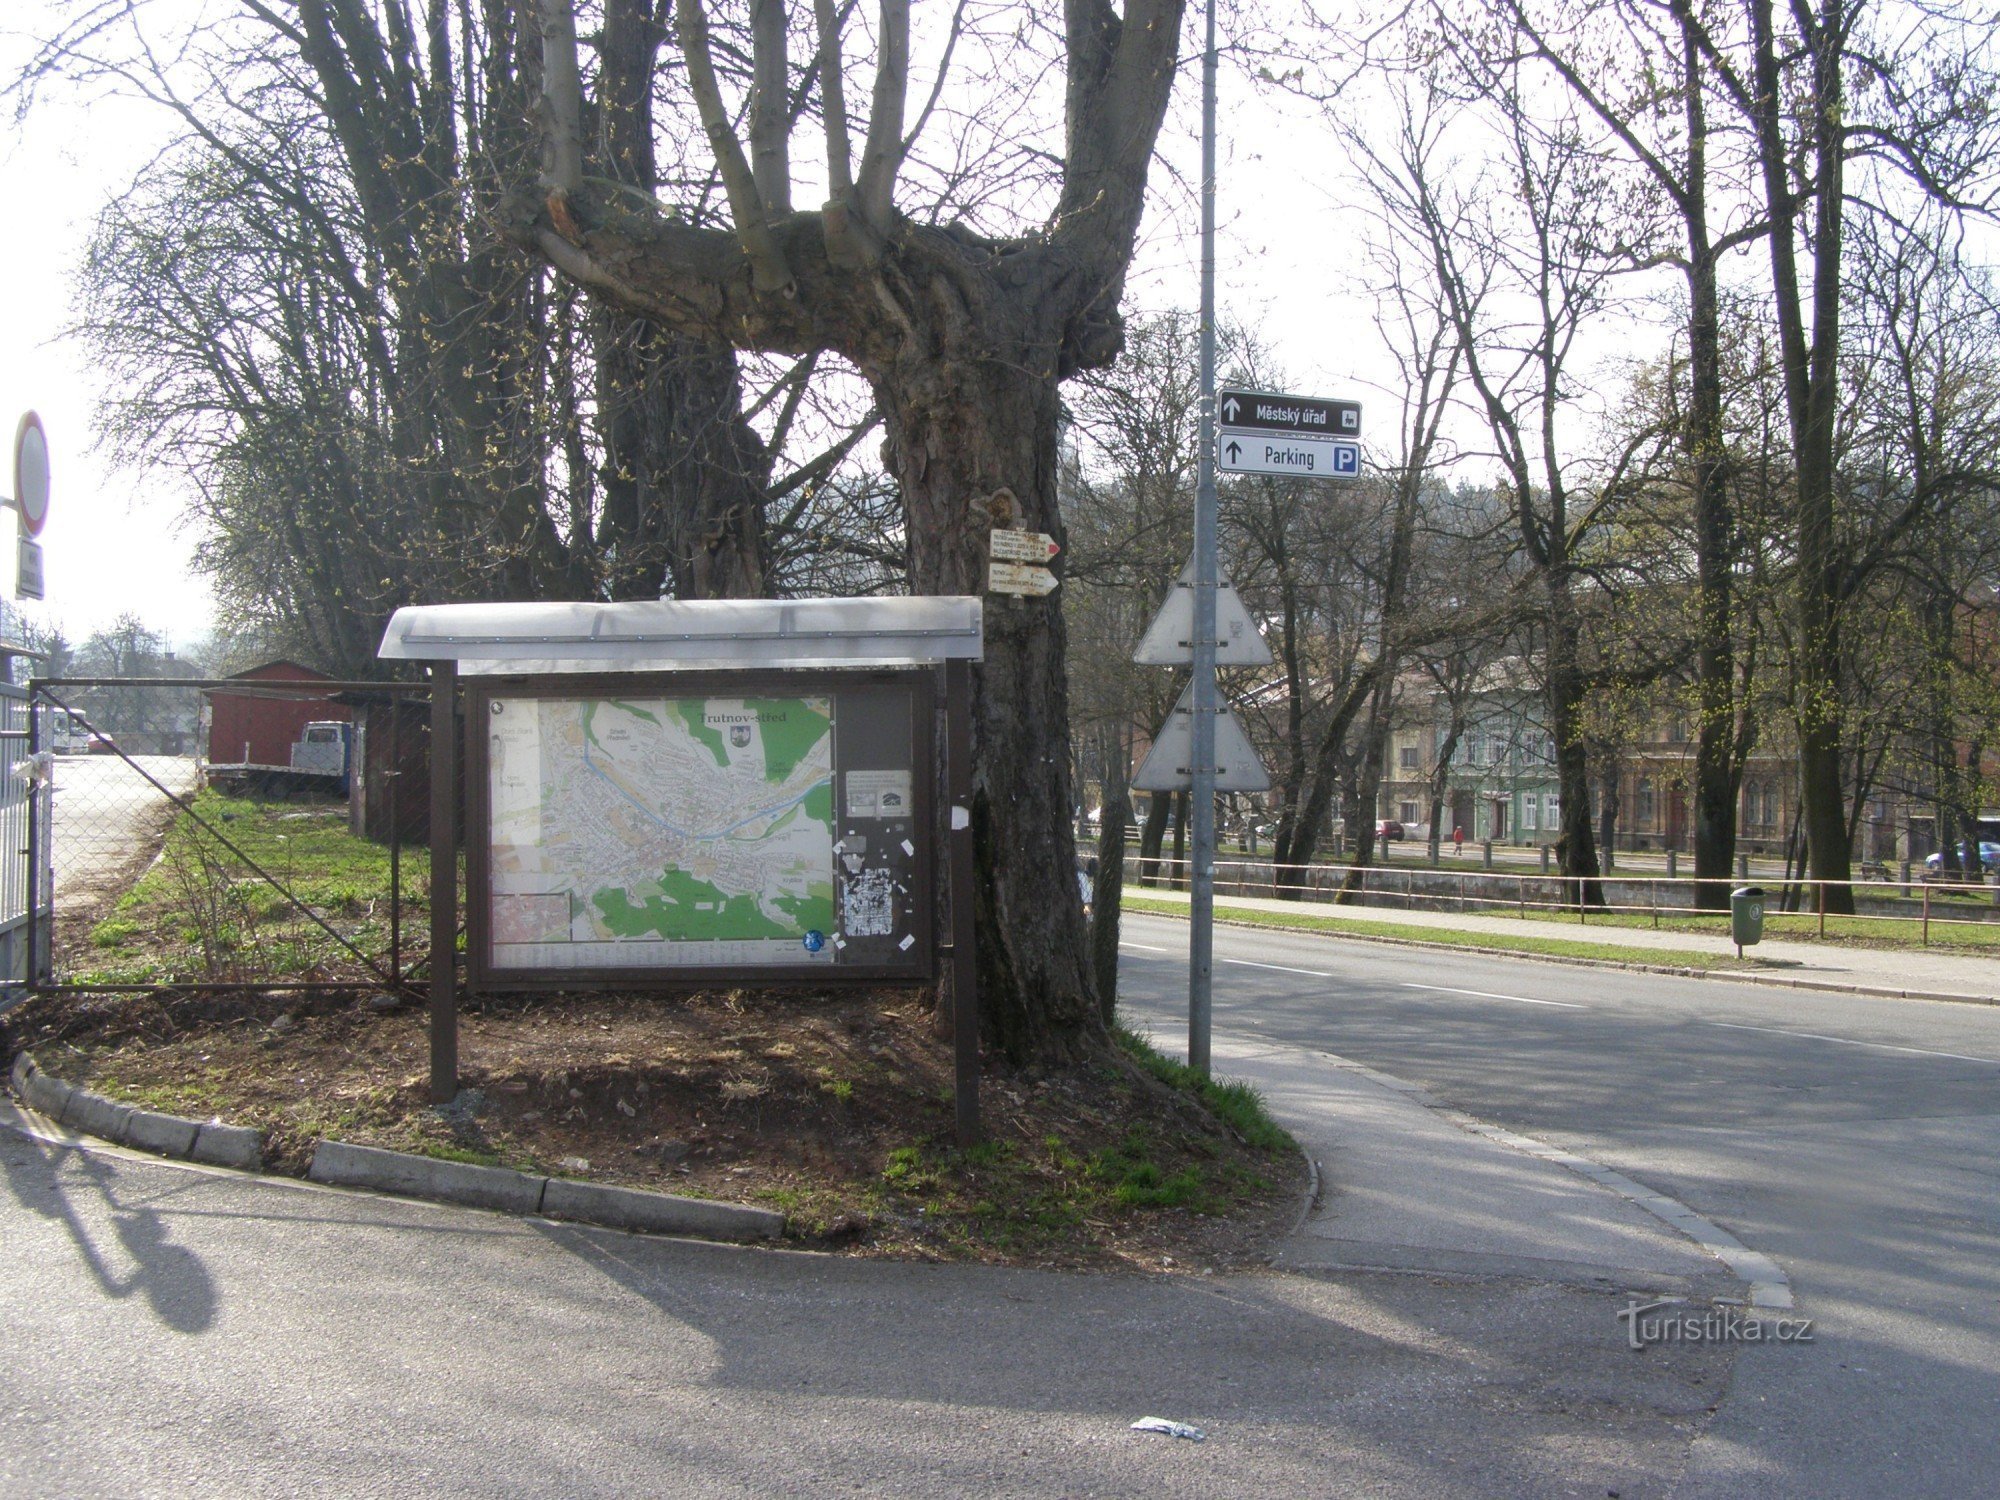 encrucijada turística Trutnov - hl. estación